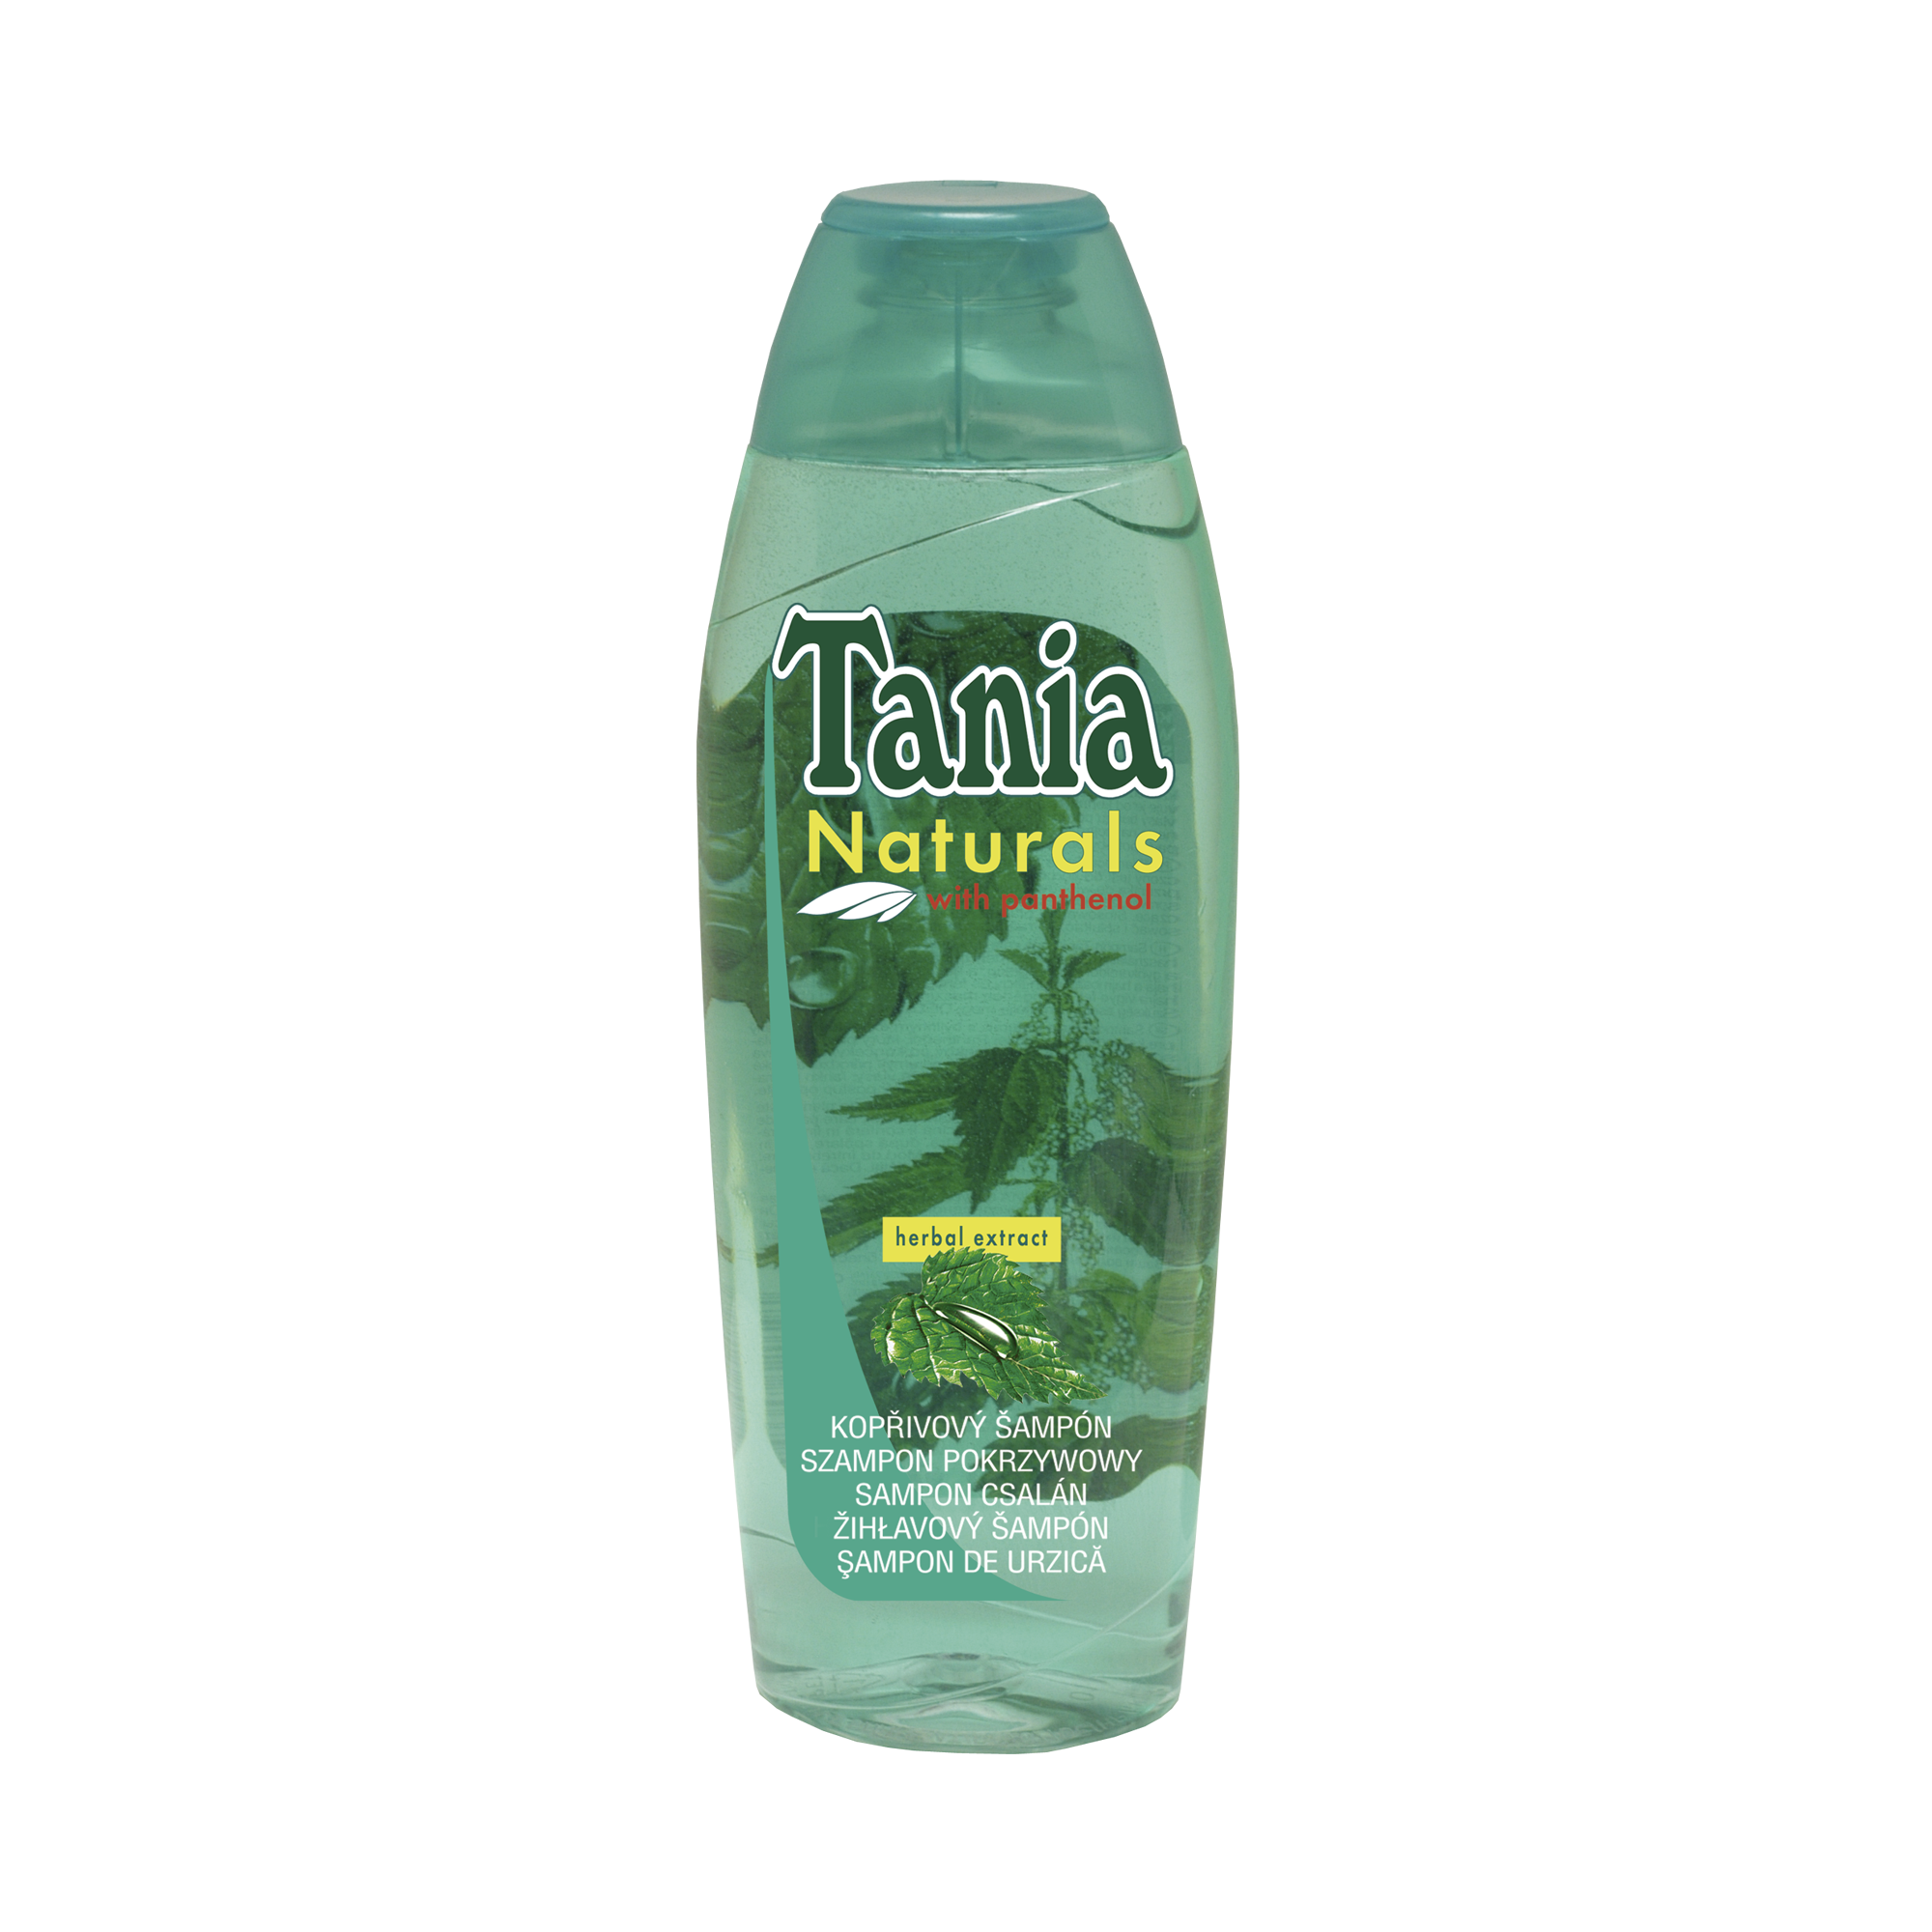 Şamponul Tania naturals de urzică